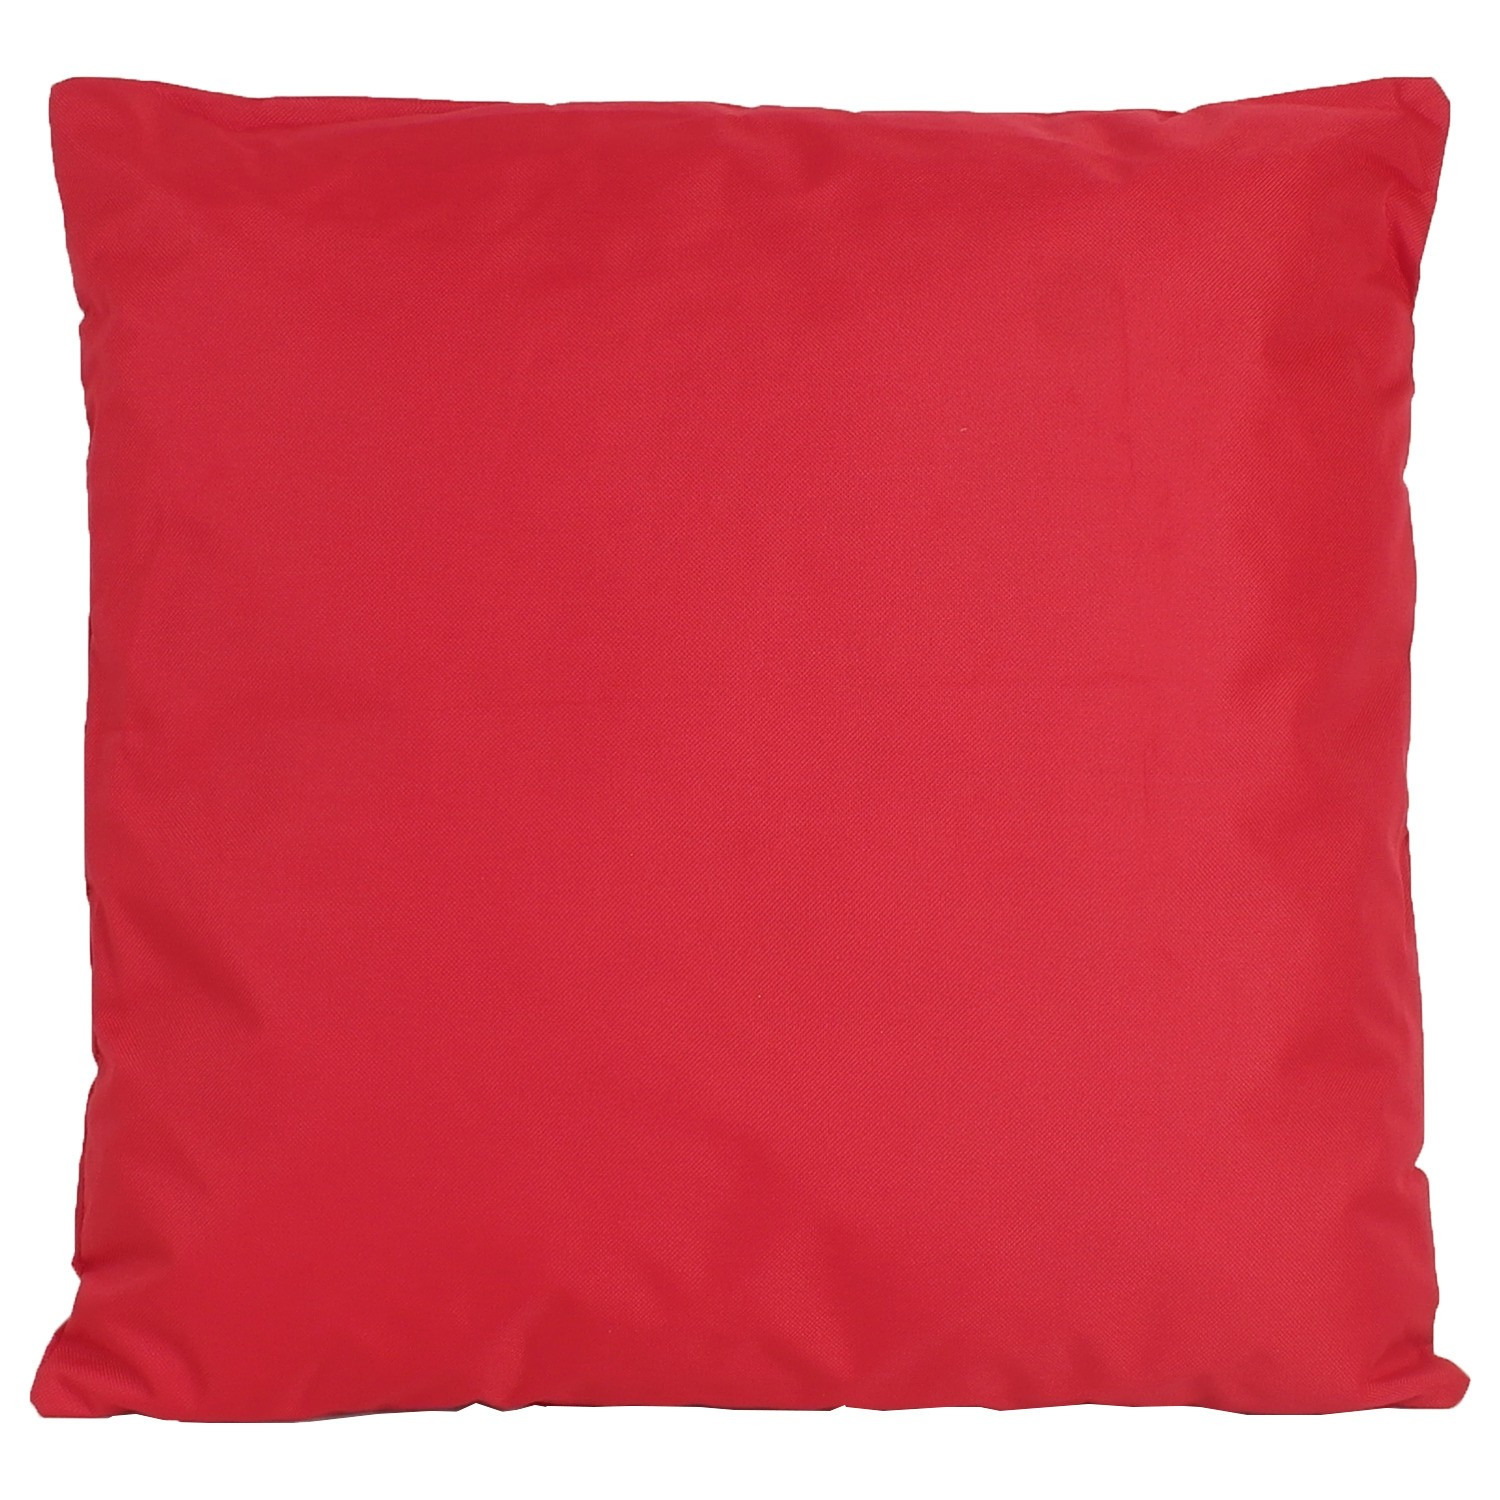 1x Bank-Sier kussens voor binnen en buiten in de kleur rood 45 x 45 cm